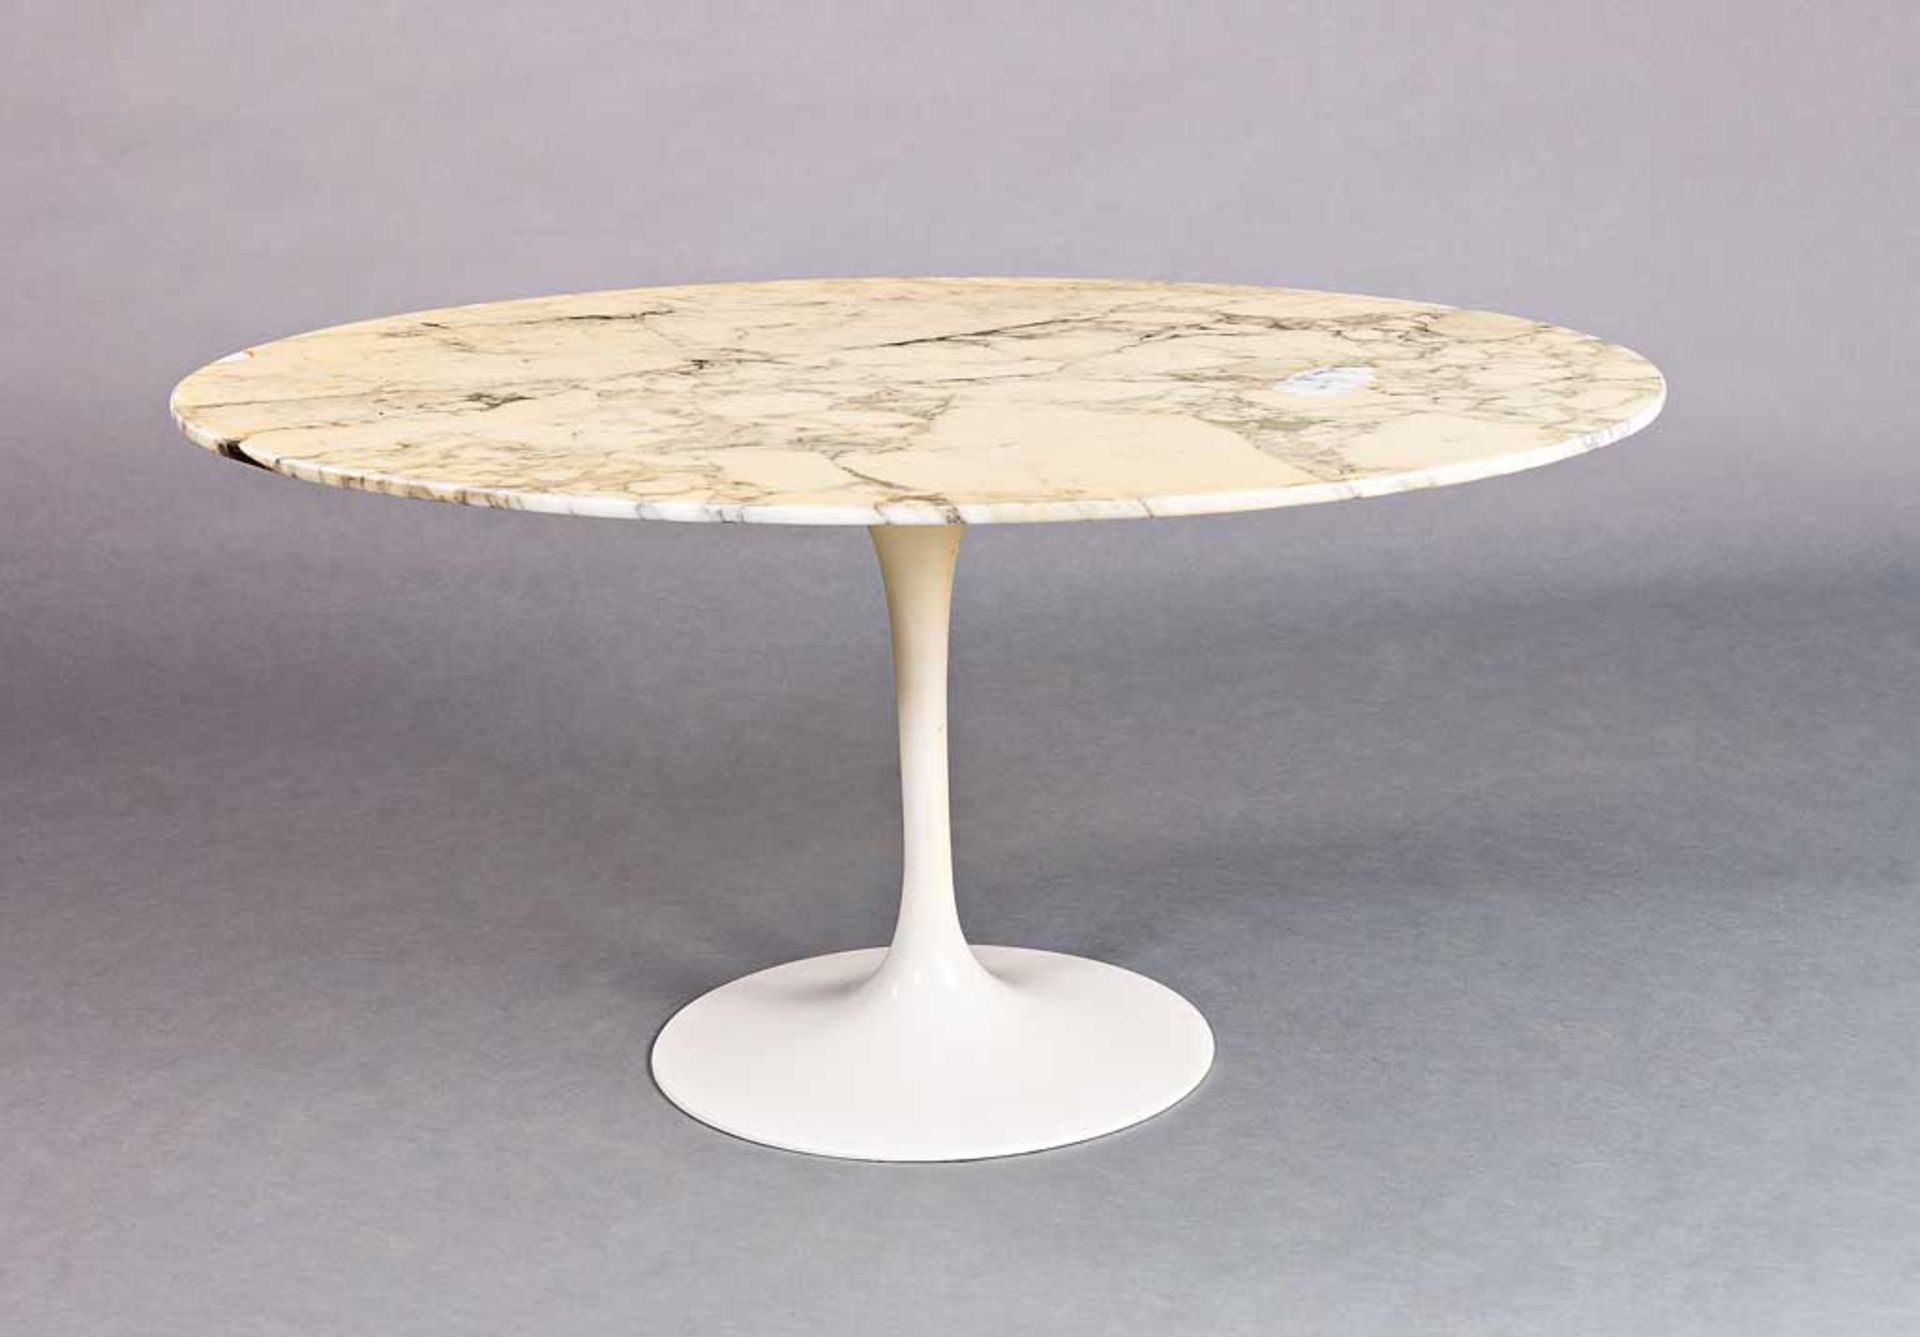 Saarinen-Couchtisch. Weißer Metallfuß. Ovale Marmorplatte. Entwurf Eero Saarinen 1955 für Knoll (